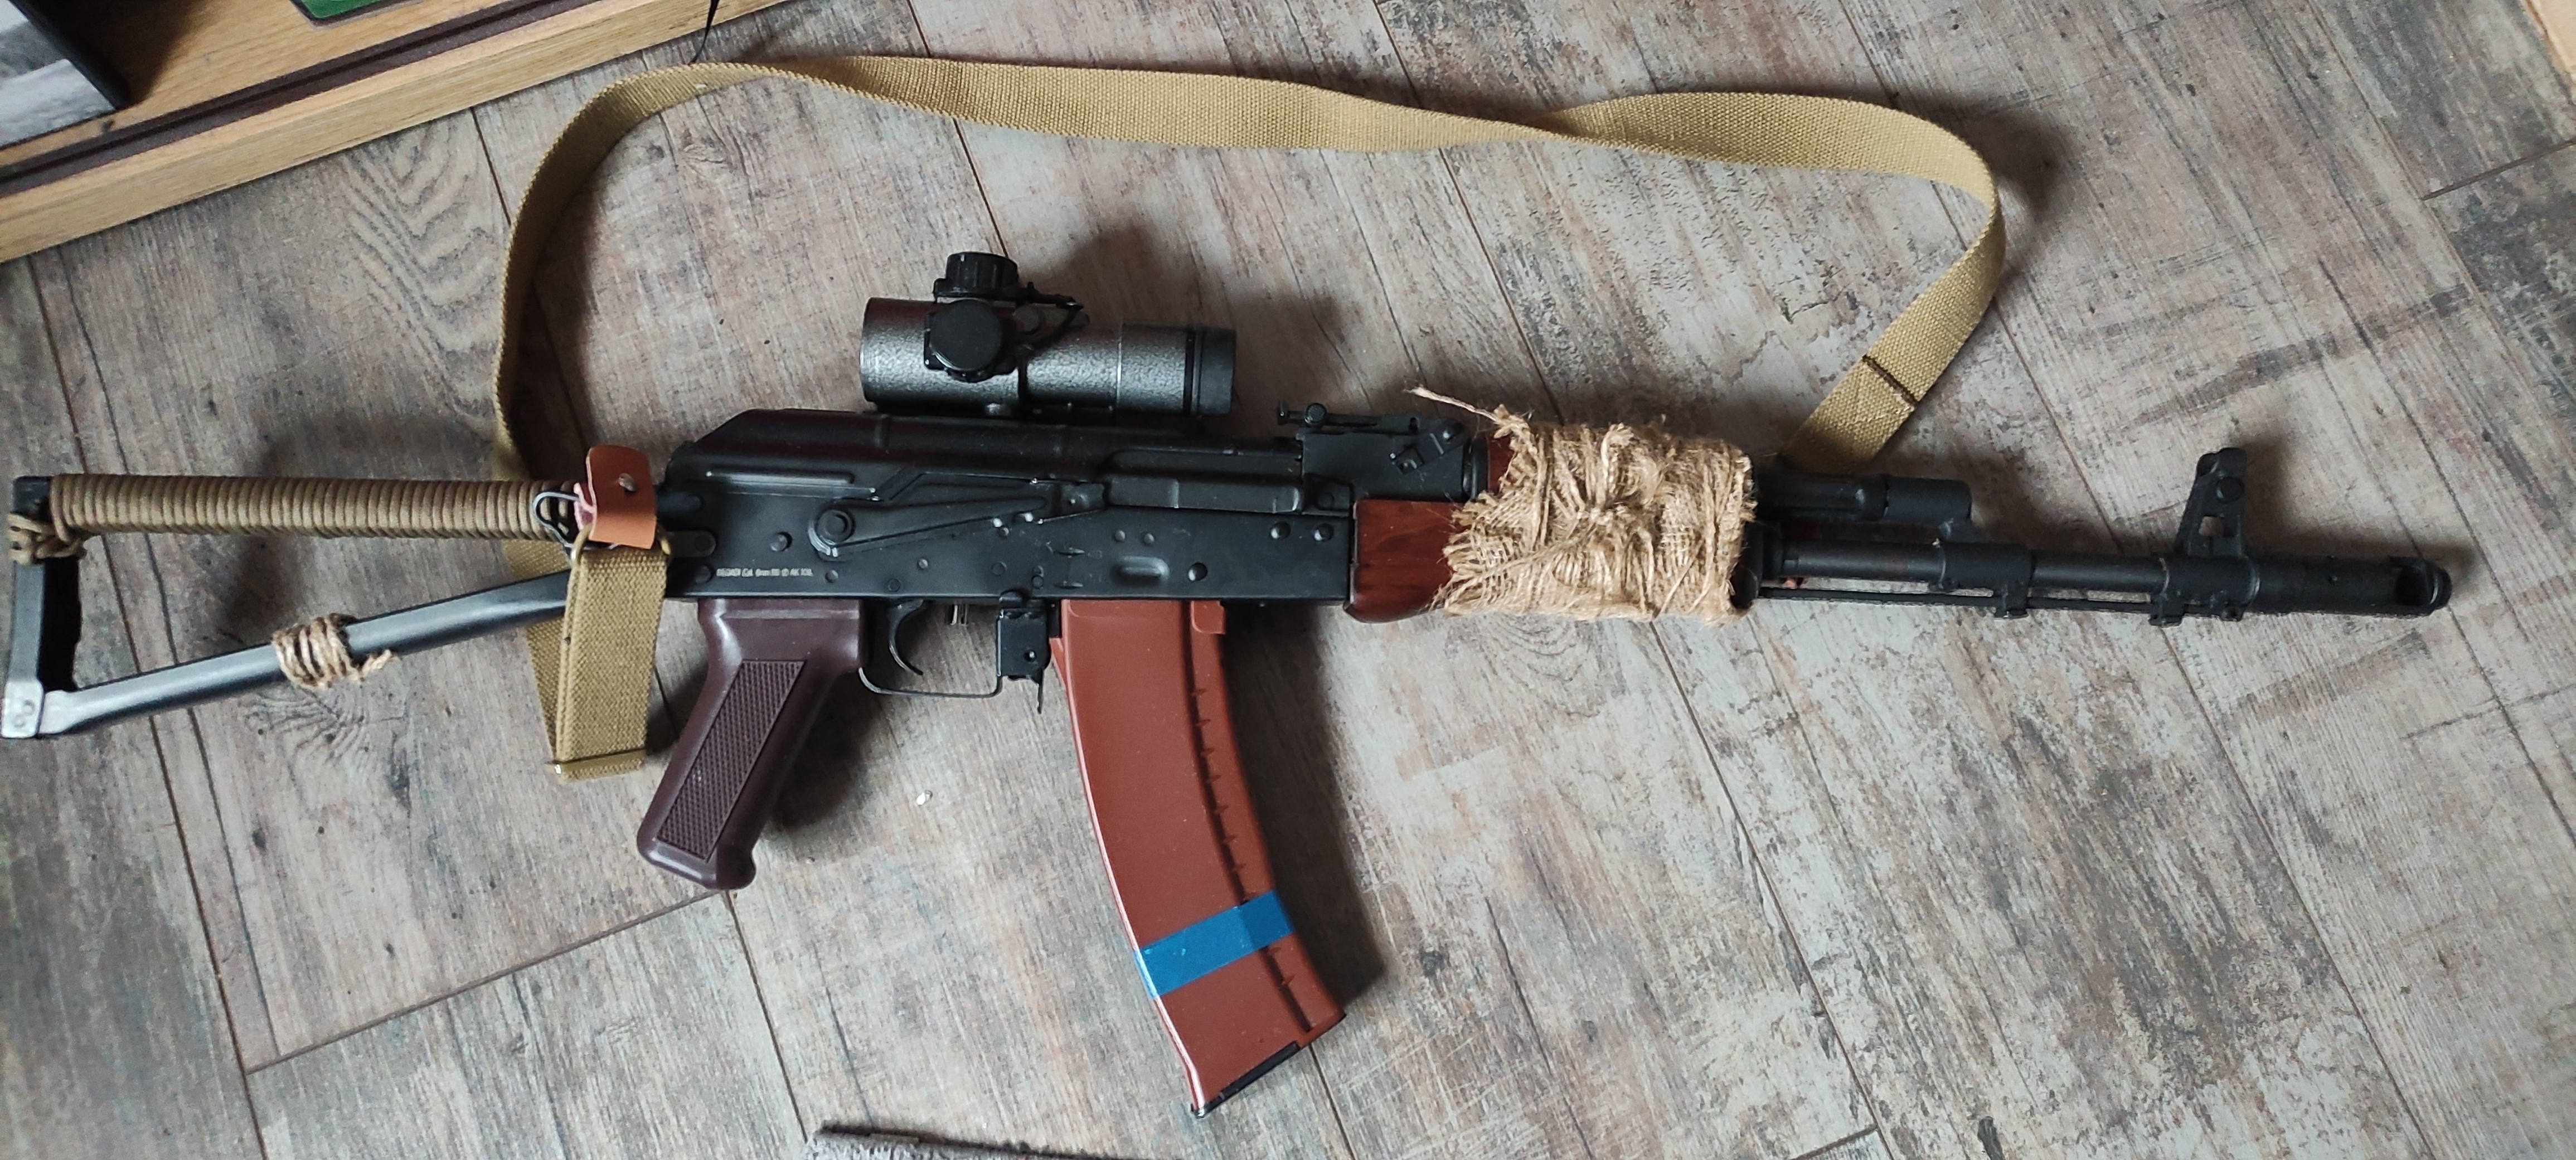 AKS-74N